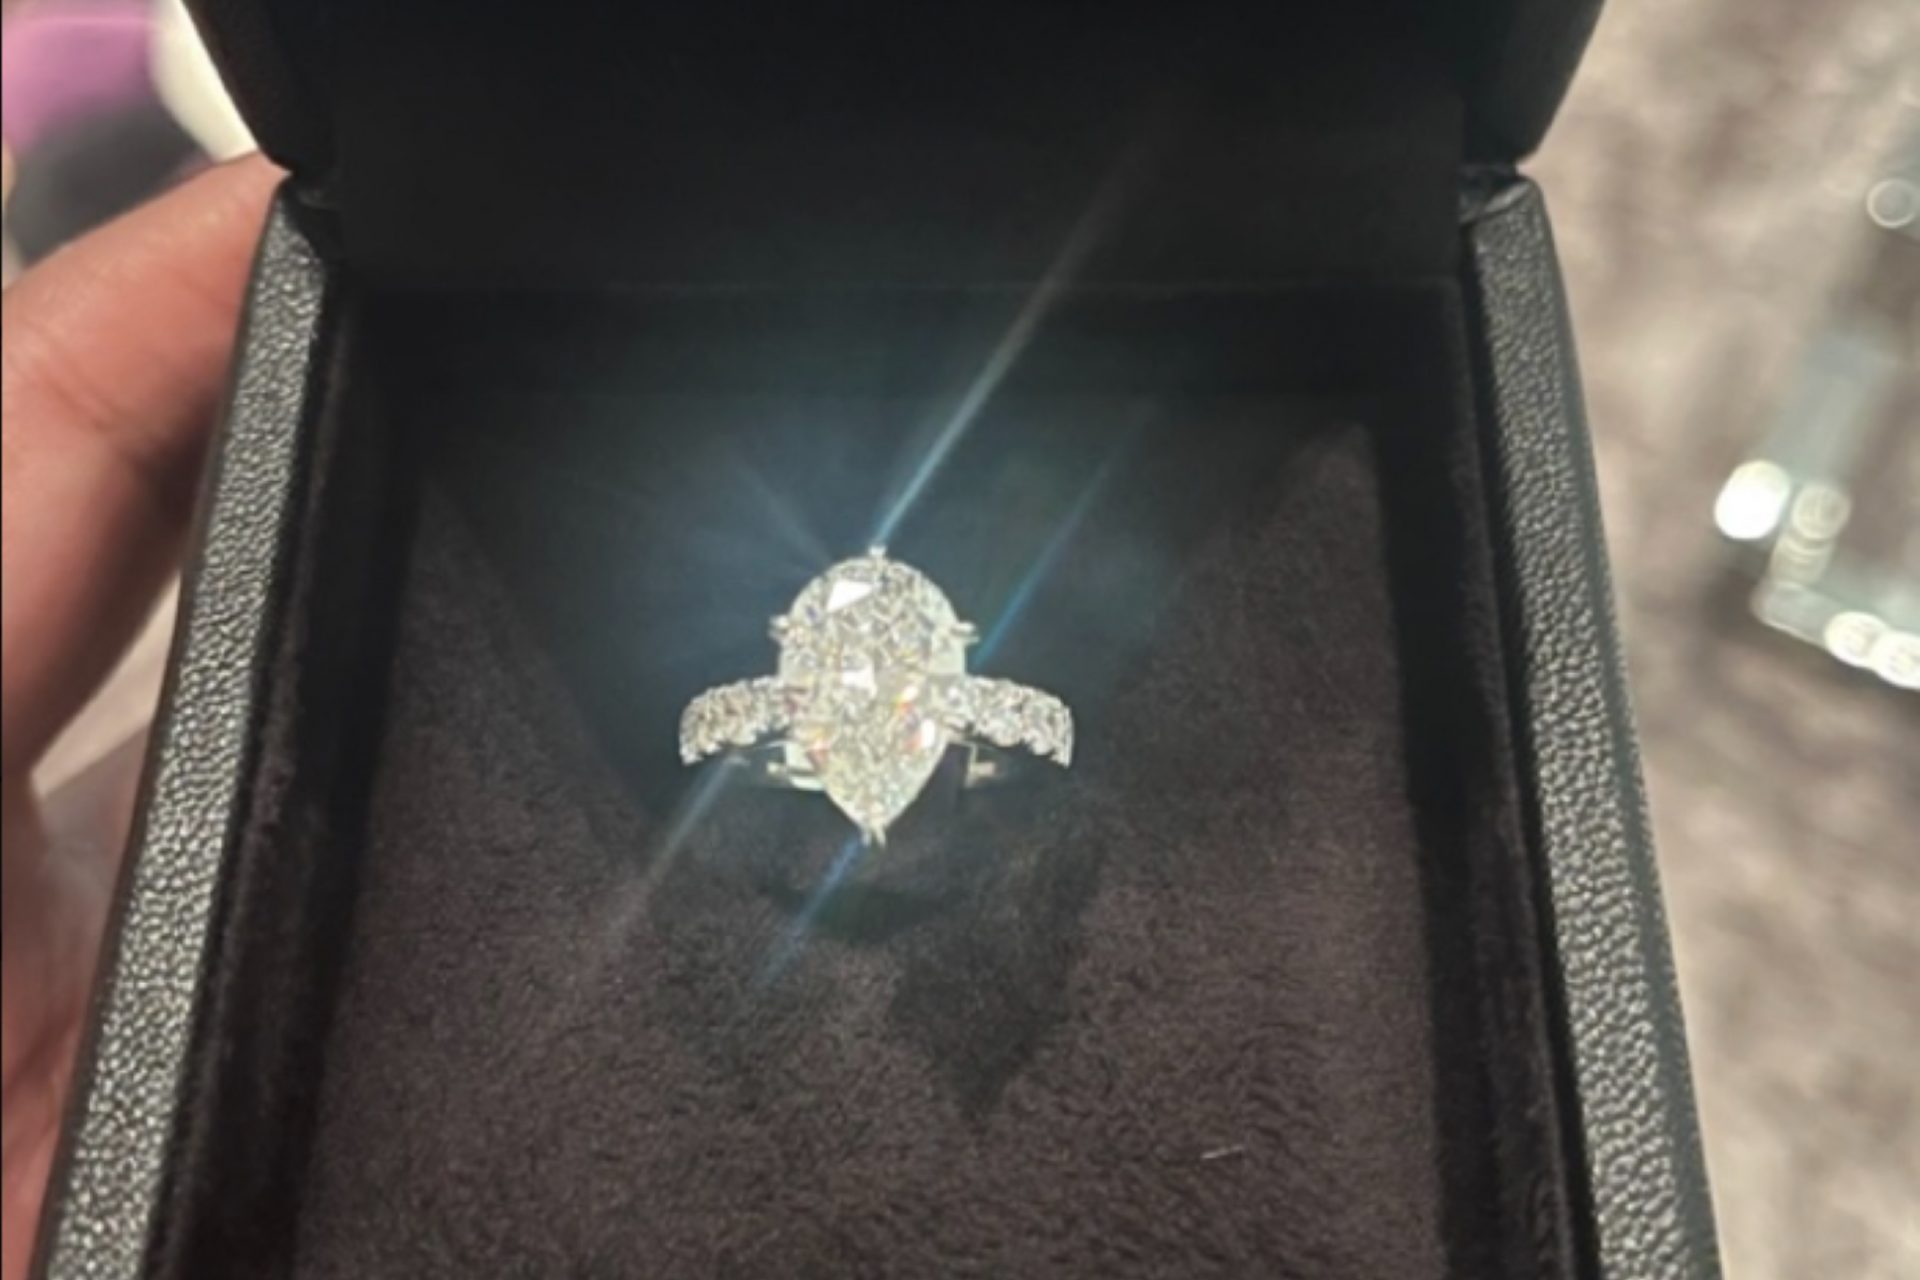 Le compró un enorme anillo de diamantes para Navidad.